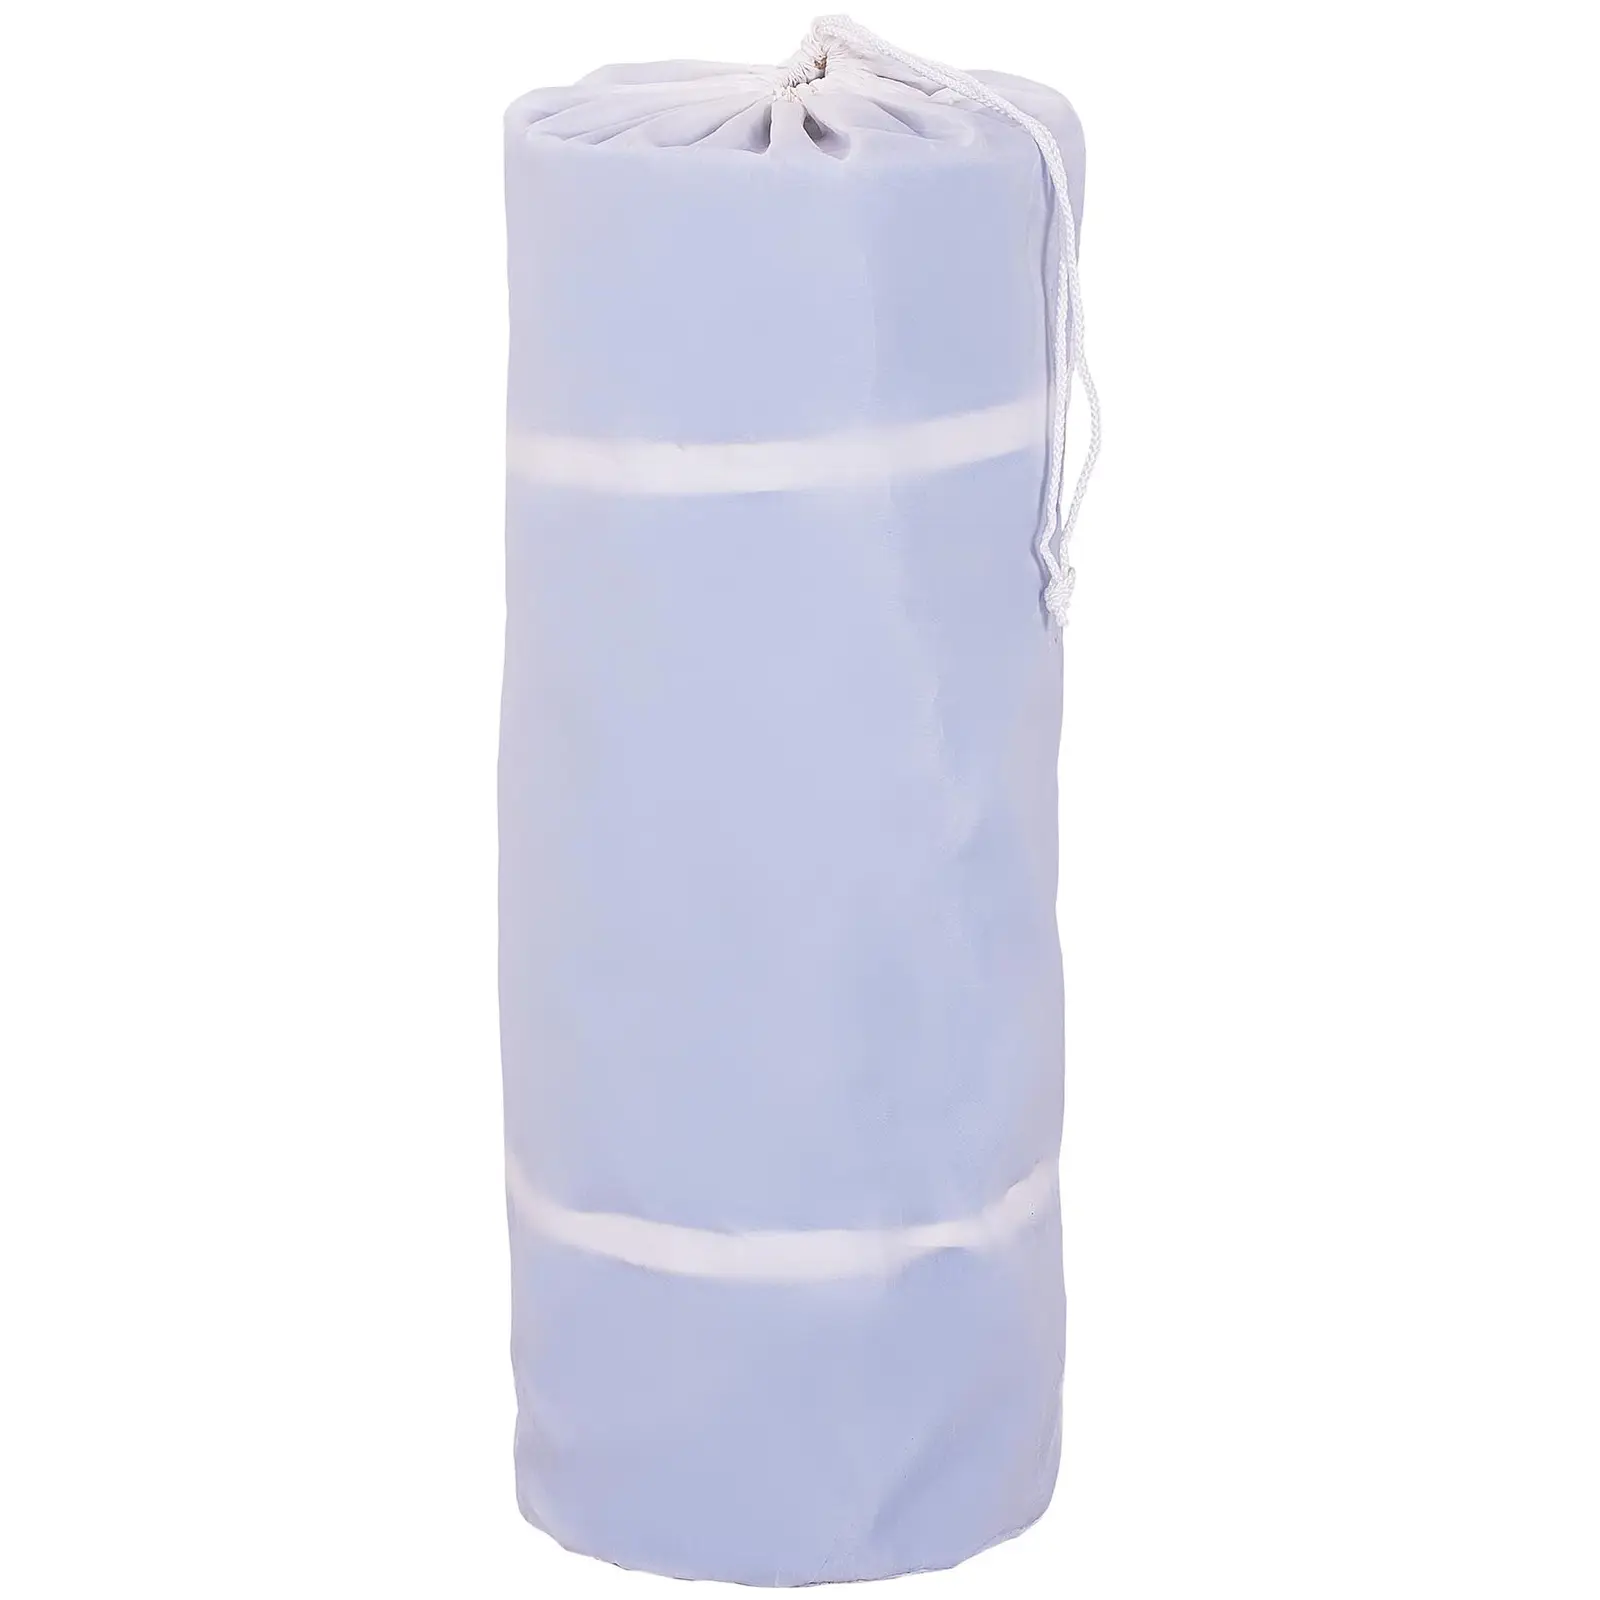 Tappeto da ginnastica gonfiabile - 300 x 100 x 20 cm - 150 kg - blu/bianco